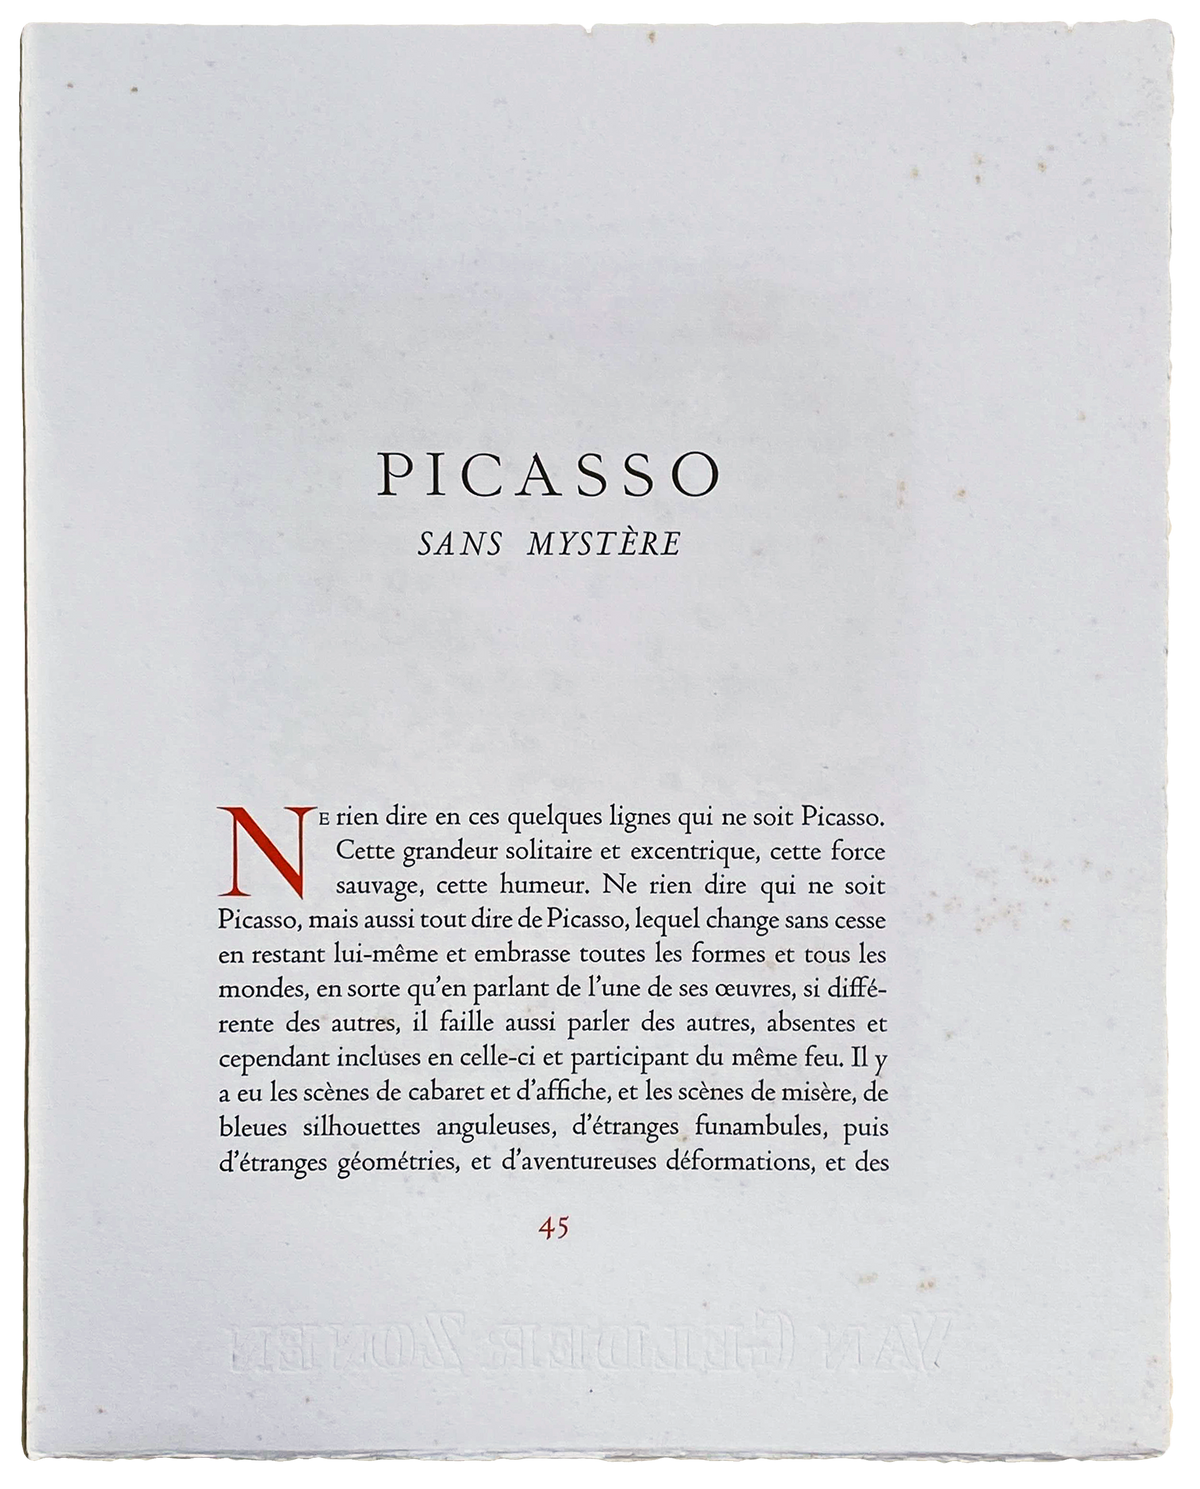 Pablo Picasso - &quot;La Casserole eMaille&quot; - Signed 1950 Robert Rey Print - 18.3 x 14.3&quot;